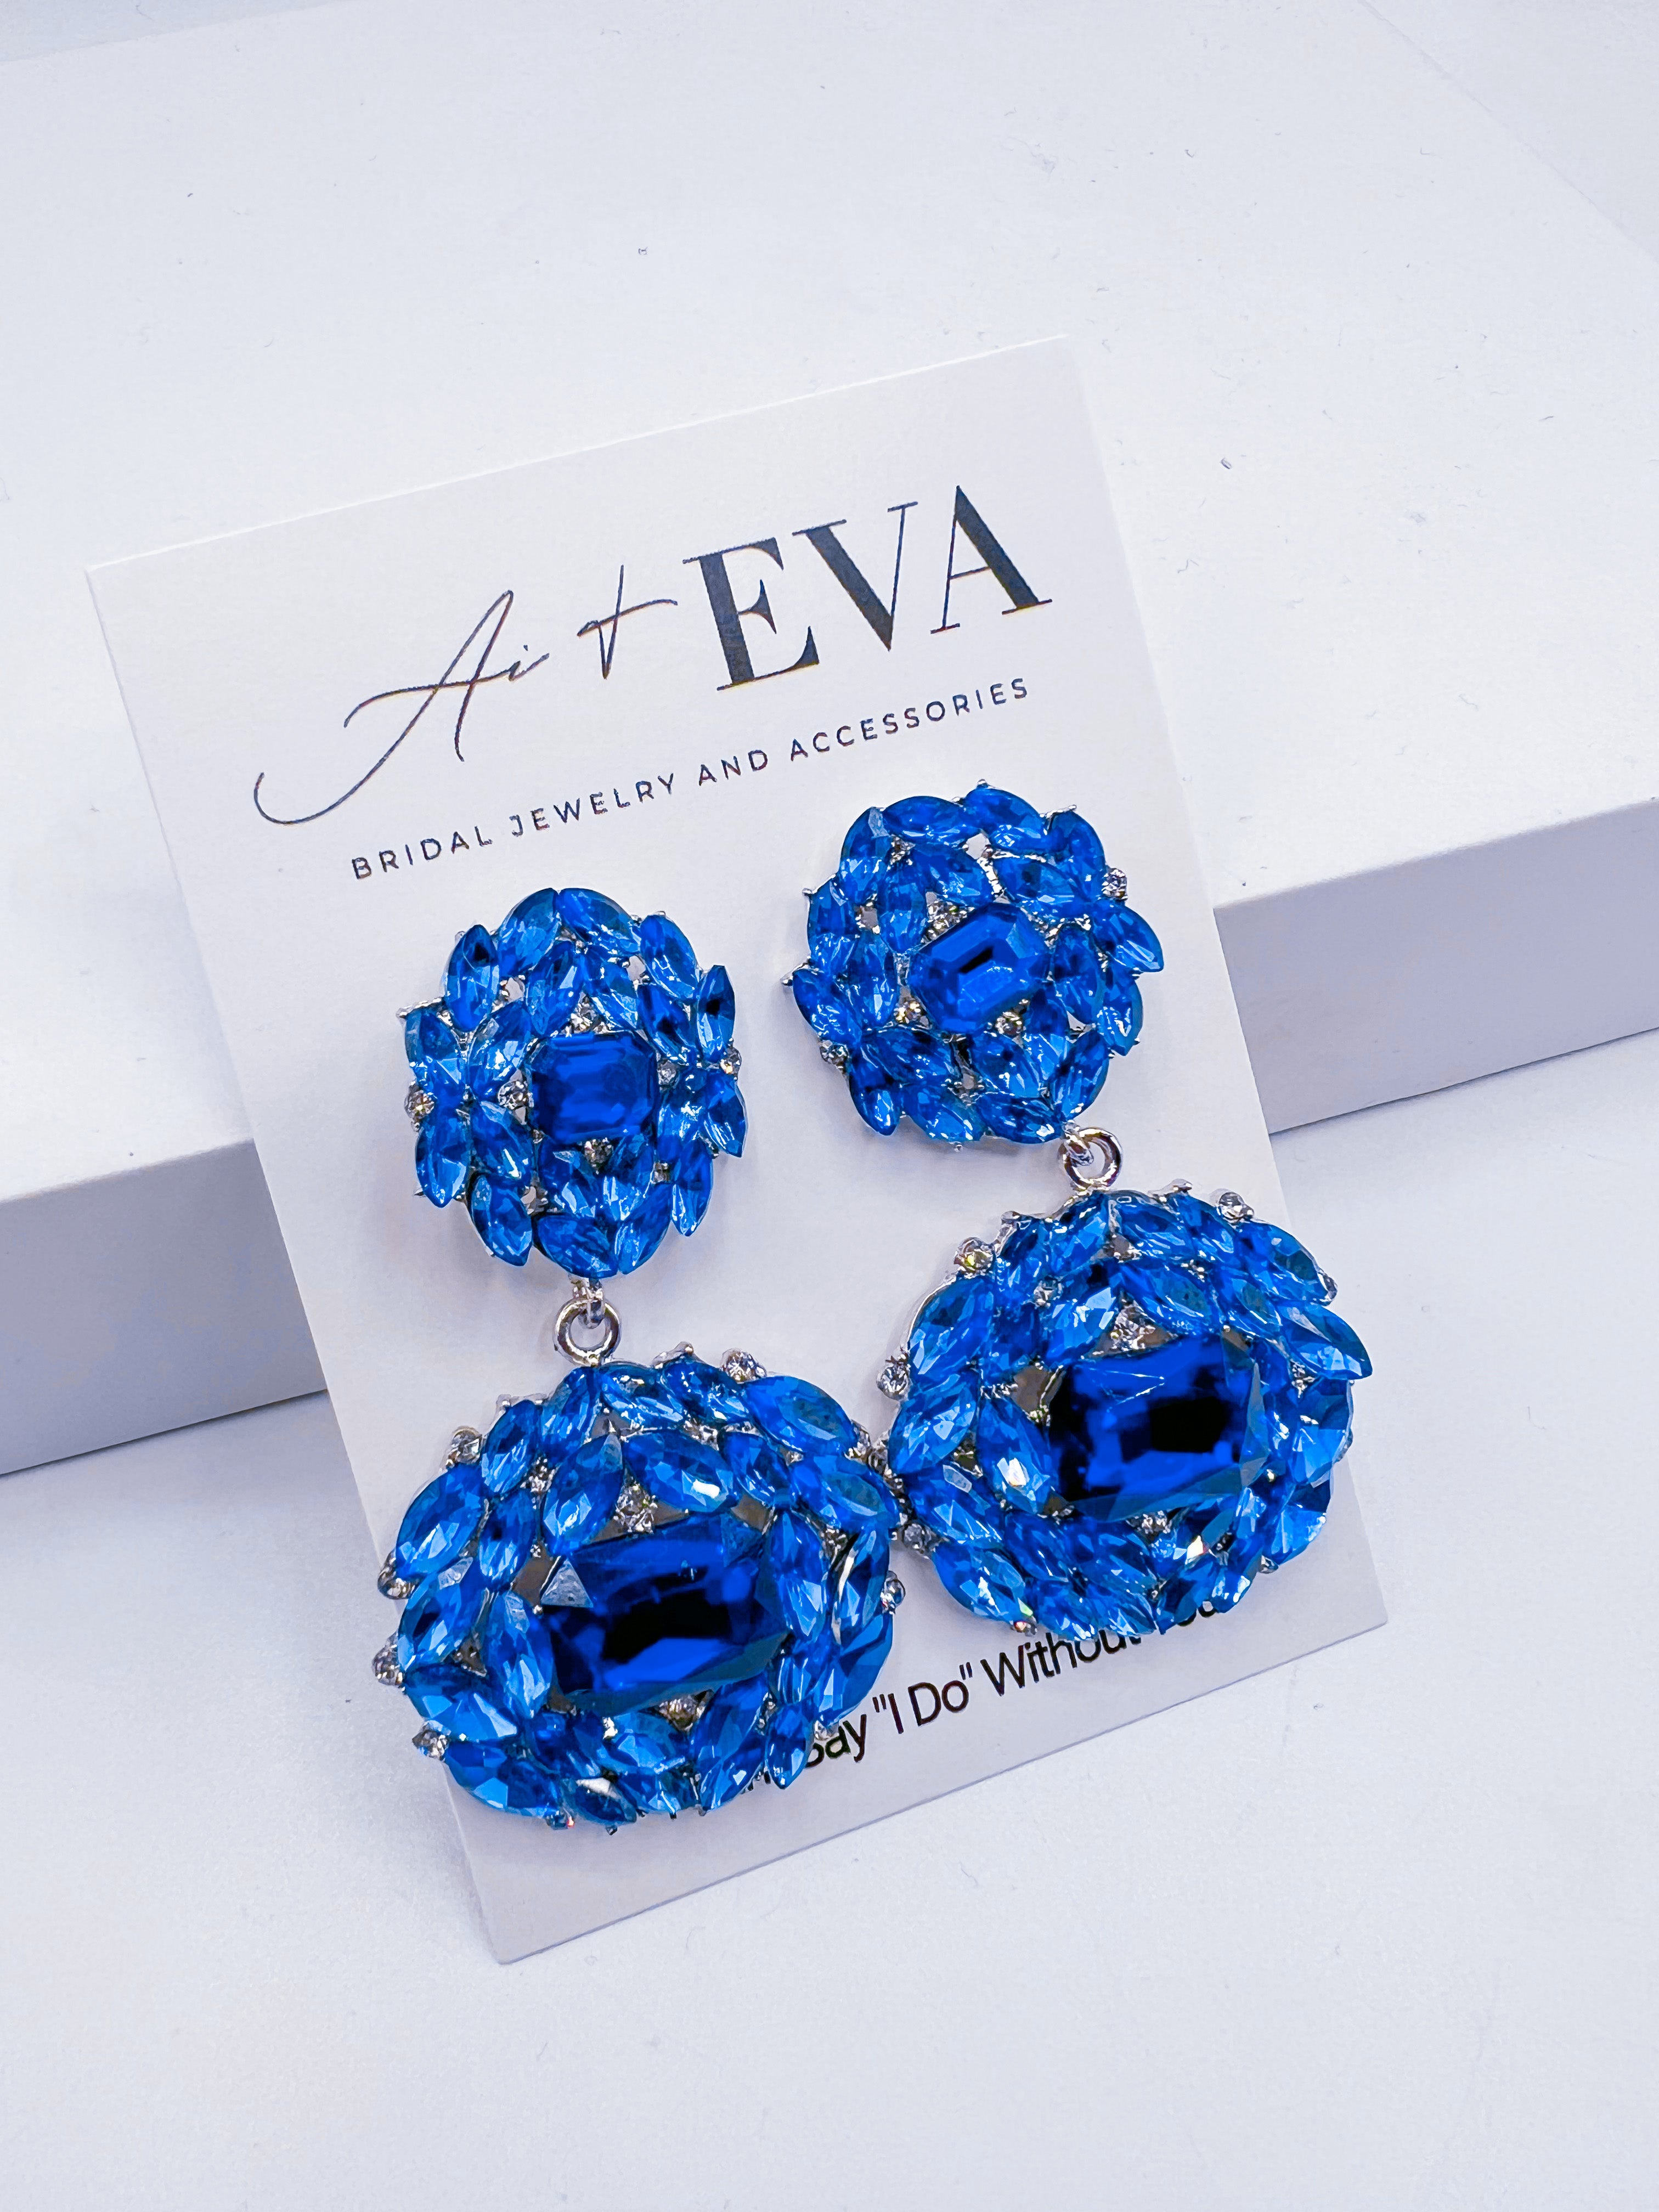 Buy Blue Large Crystal Earrings Royal Blue Rhinestone Earrings Online in  India  Etsy